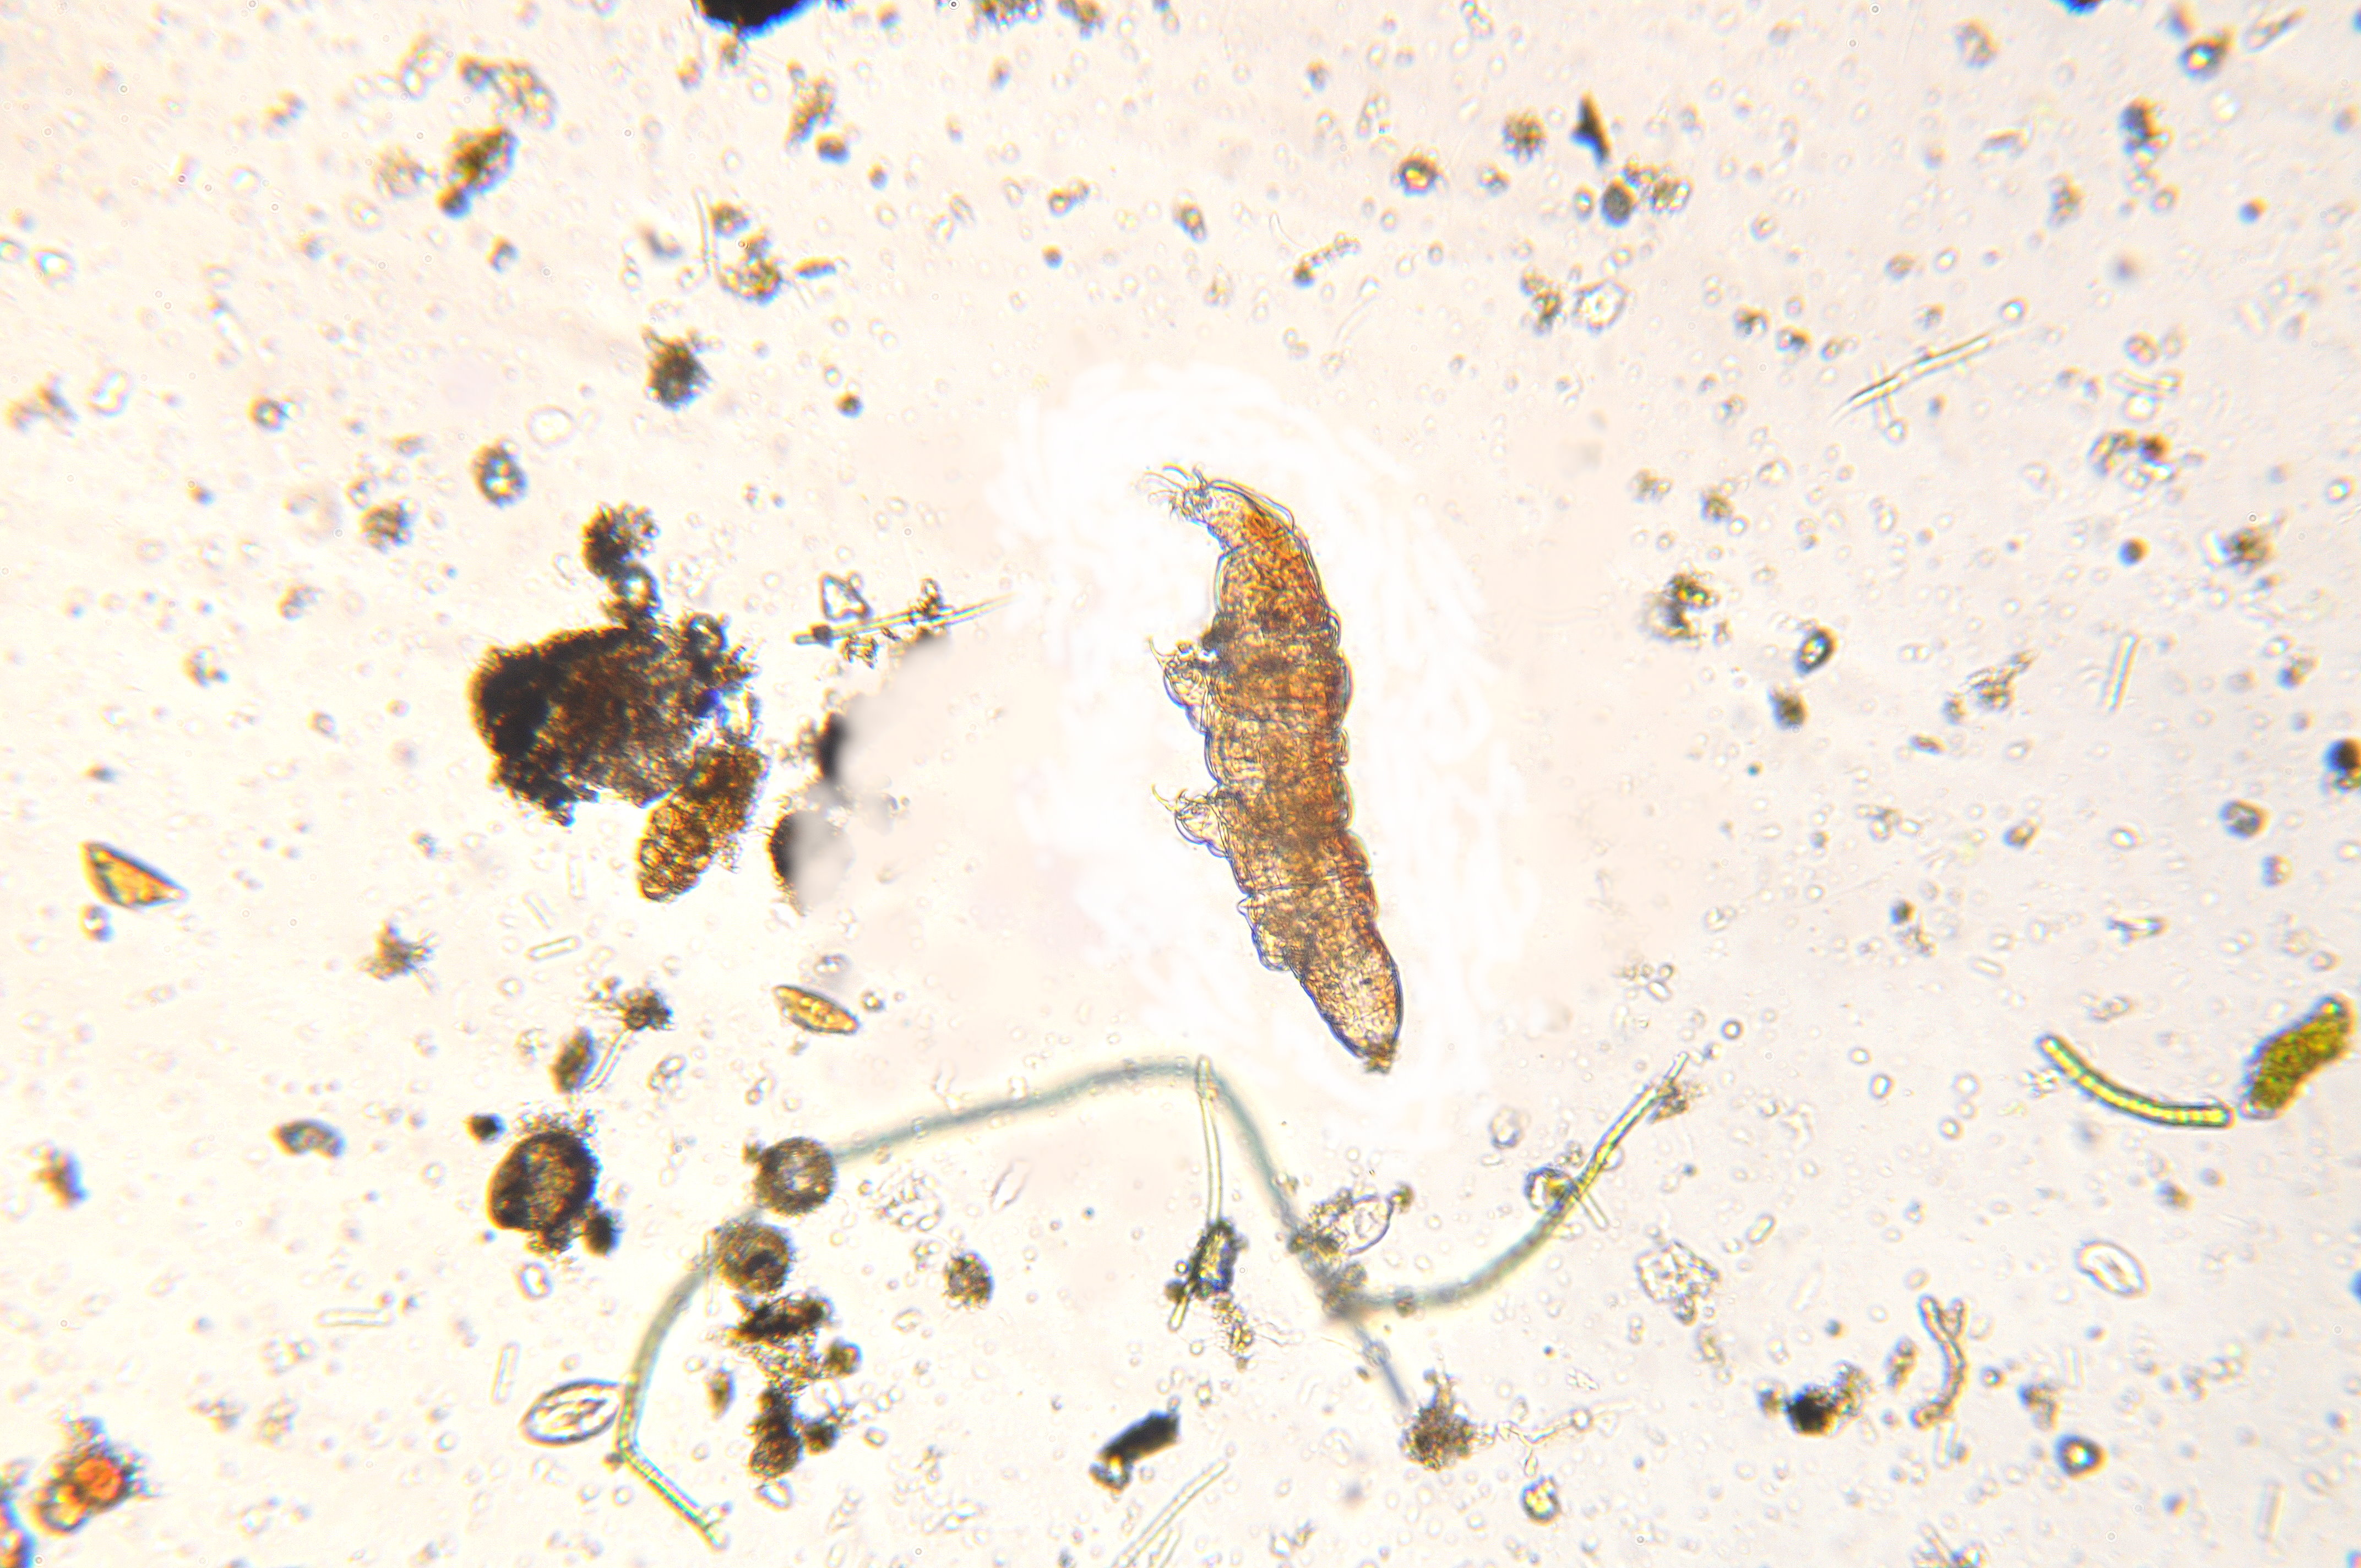 Bärtierchen (Stamm Tardigrada) aus einem Moosposter auf der Nordseite des Hausdaches (Mikroskopfotografie)